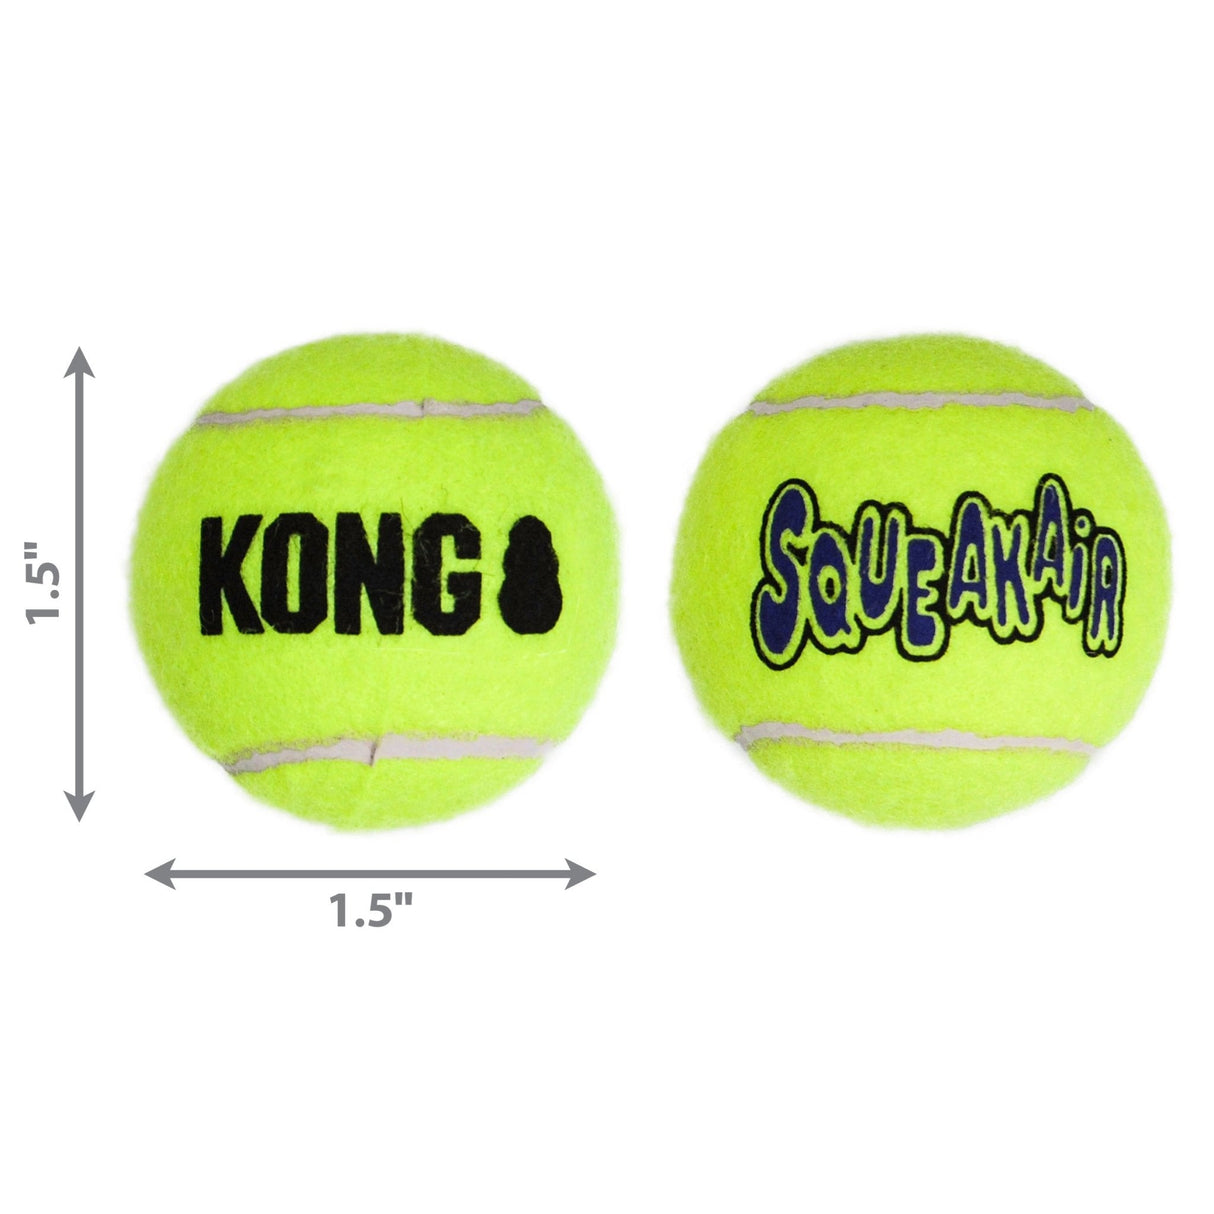 KONG Squeak Air Tennis Balls 3-Pack Dog Toy, Kong, XSmall